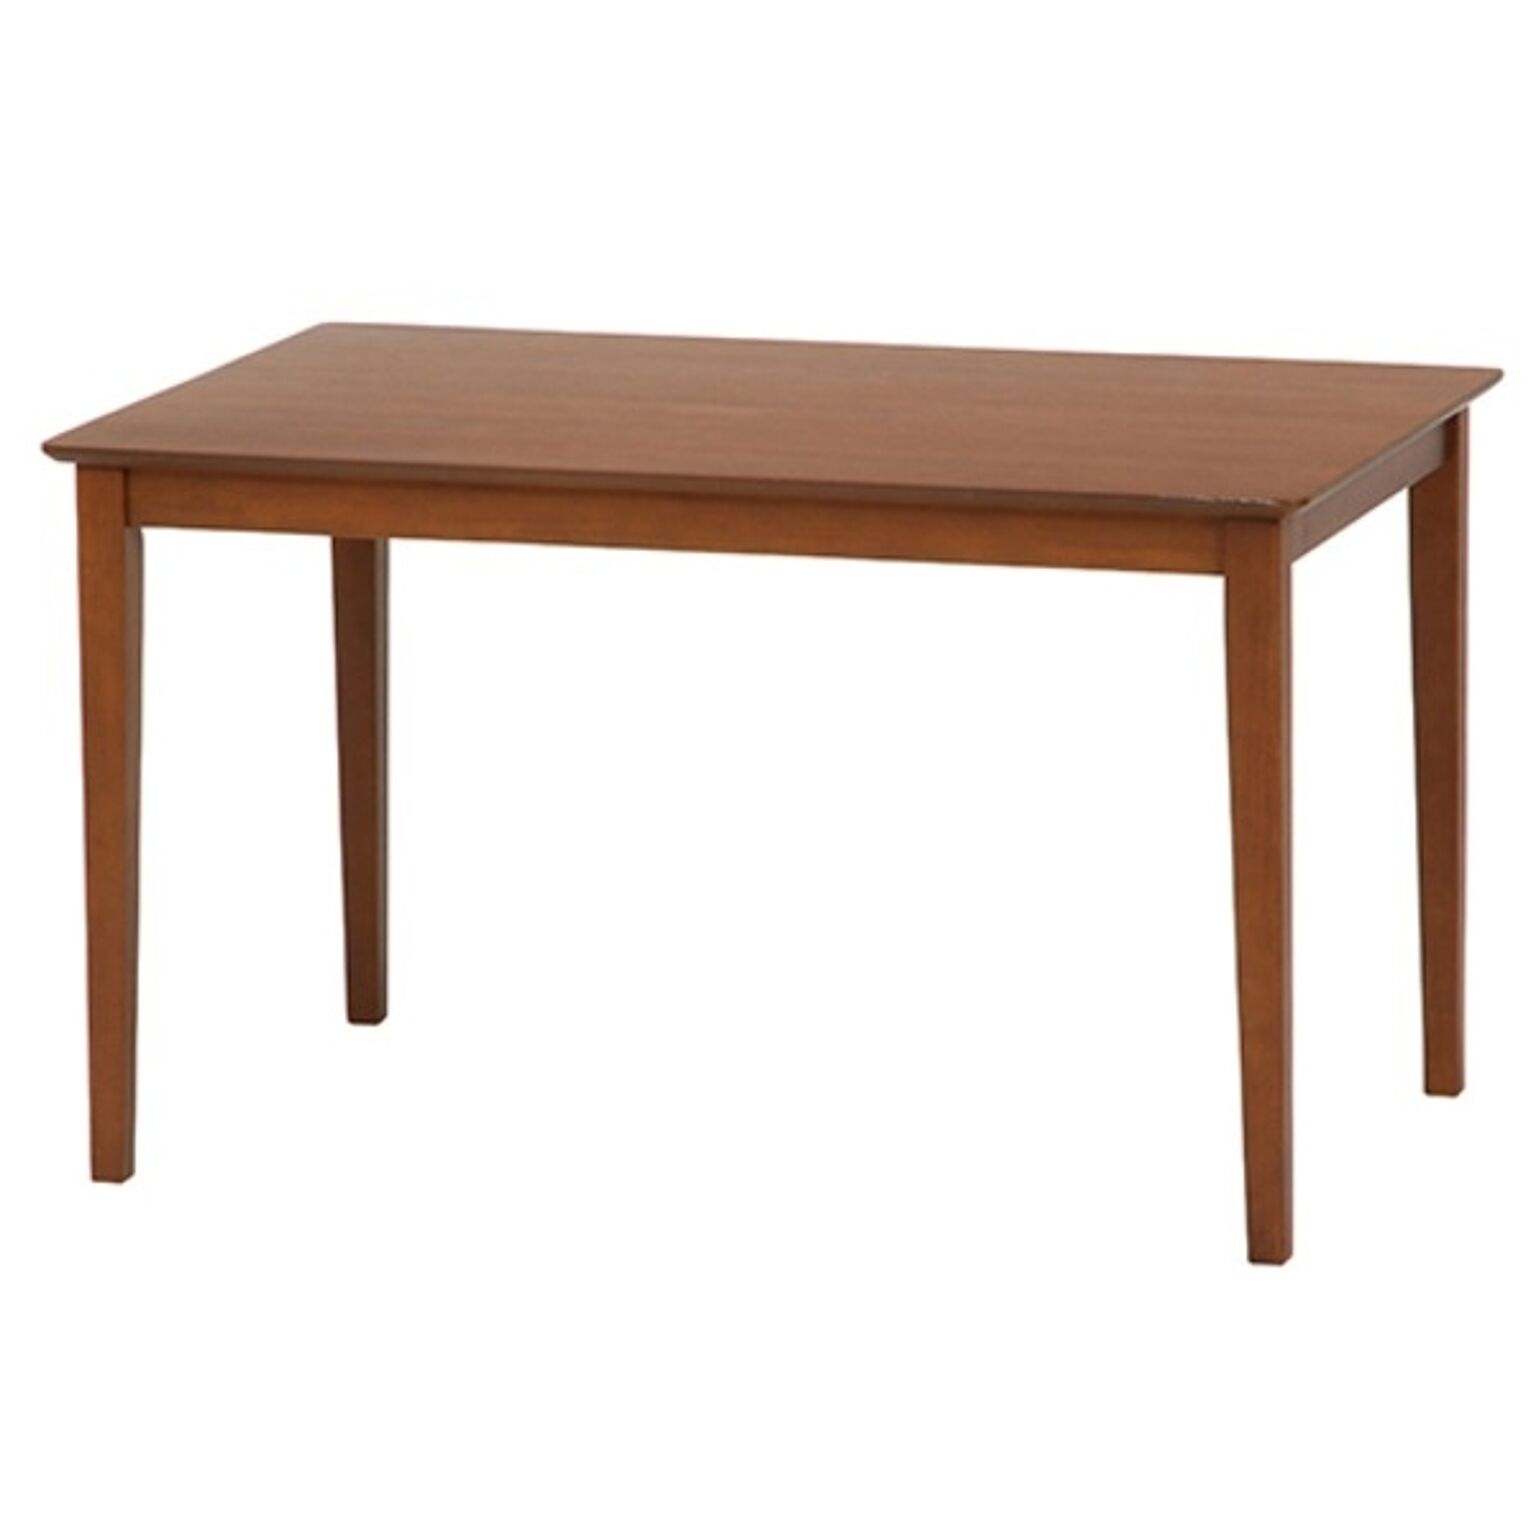 ダイニングテーブル/リビングテーブル 【ブラウン 幅120cm】 木製脚付き 『スノア』